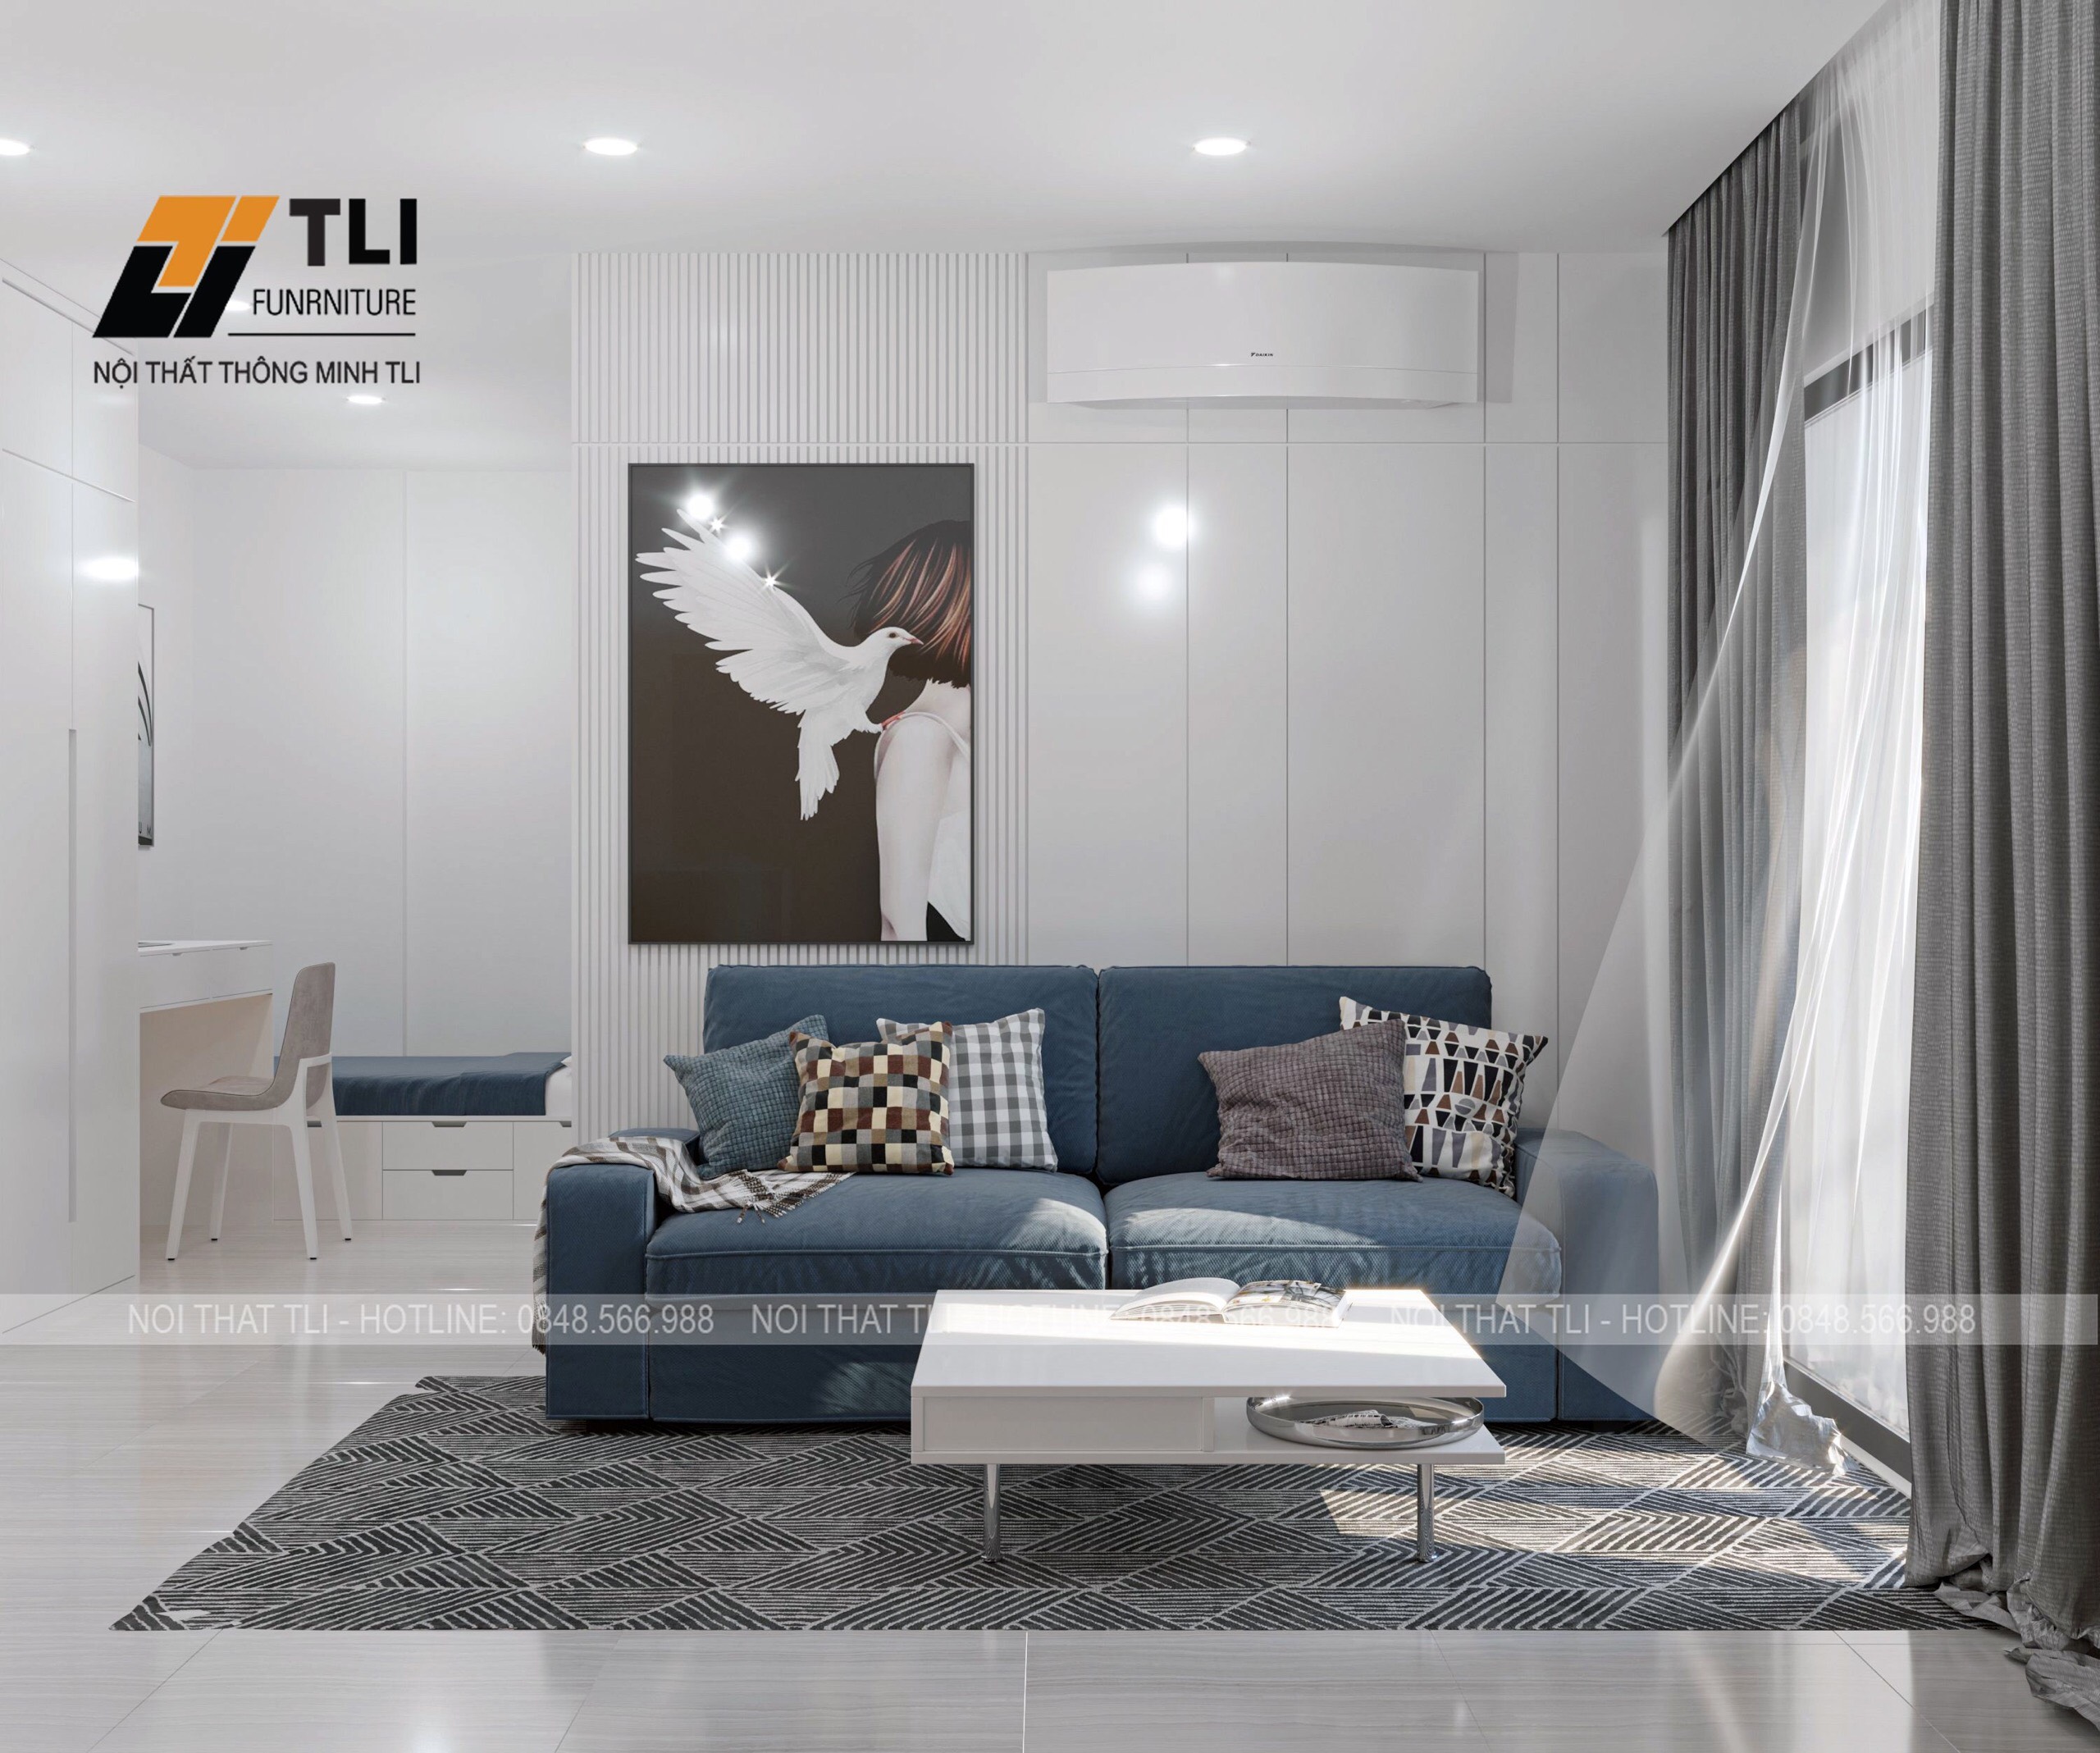 Thiết kế nội thất phong cách hiện đại đơn giản và đẹp 2024 mang lại cảm giác trẻ trung và thời thượng cho không gian sống của bạn. Với sự kết hợp hài hòa giữa chất liệu gỗ, kim loại và các sản phẩm nội thất tiên tiến, phòng khách trở nên thoáng mát và rộng lớn hơn. Nếu bạn đang tìm kiếm một không gian sống đầy đủ tiện nghi và sự sang trọng, thiết kế nội thất theo phong cách hiện đại là sự lựa chọn hoàn hảo.